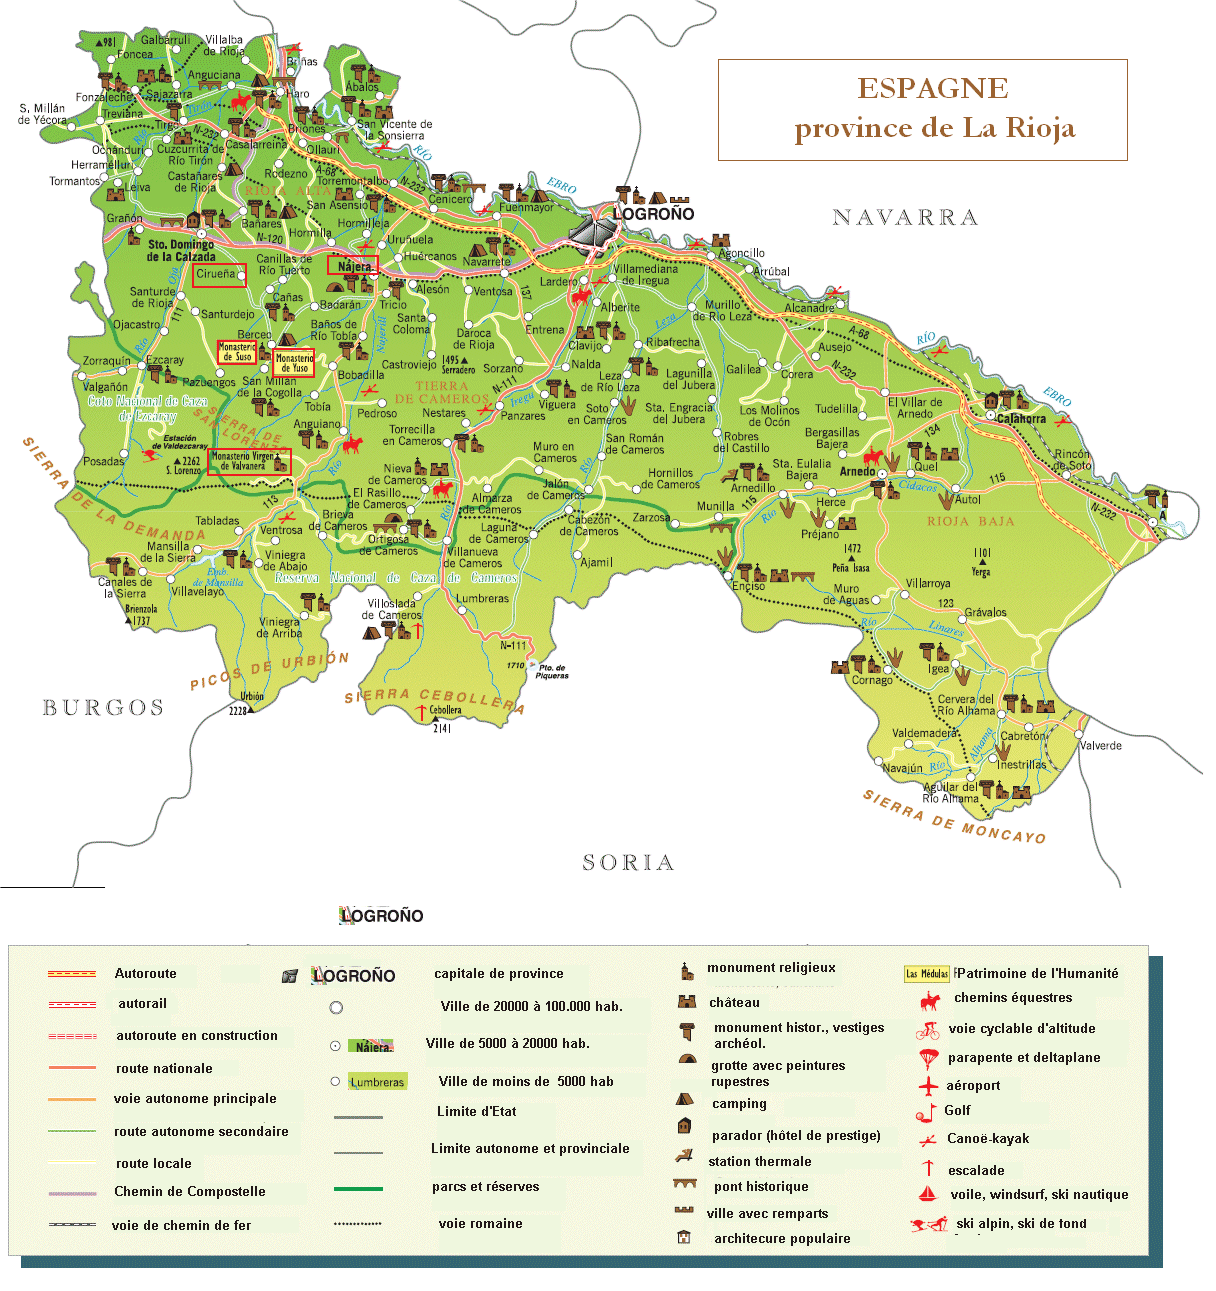 Mapa turístico de La Rioja.